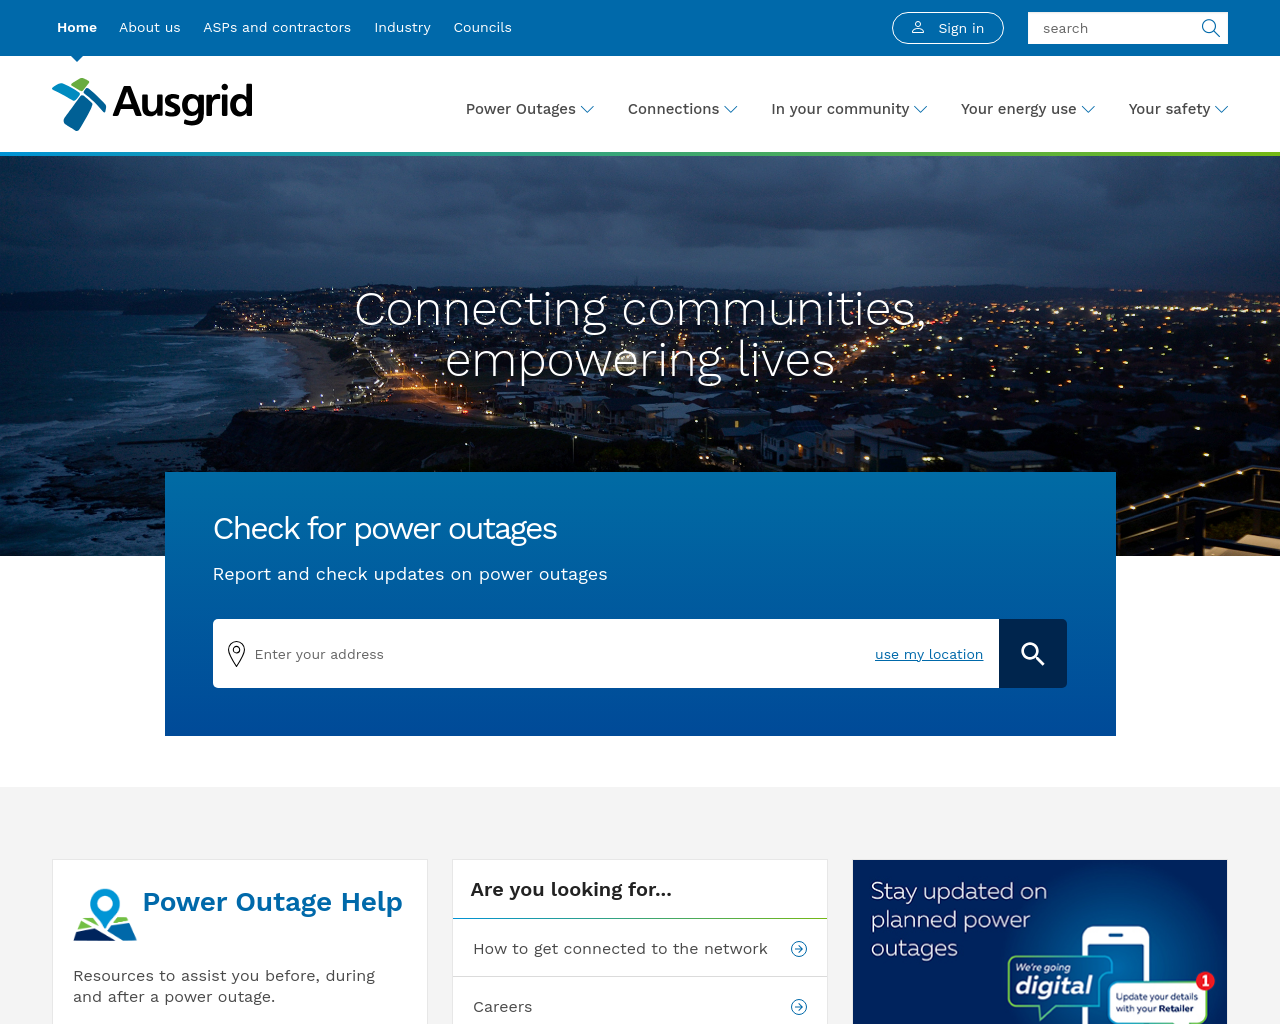 ausgrid.com.au